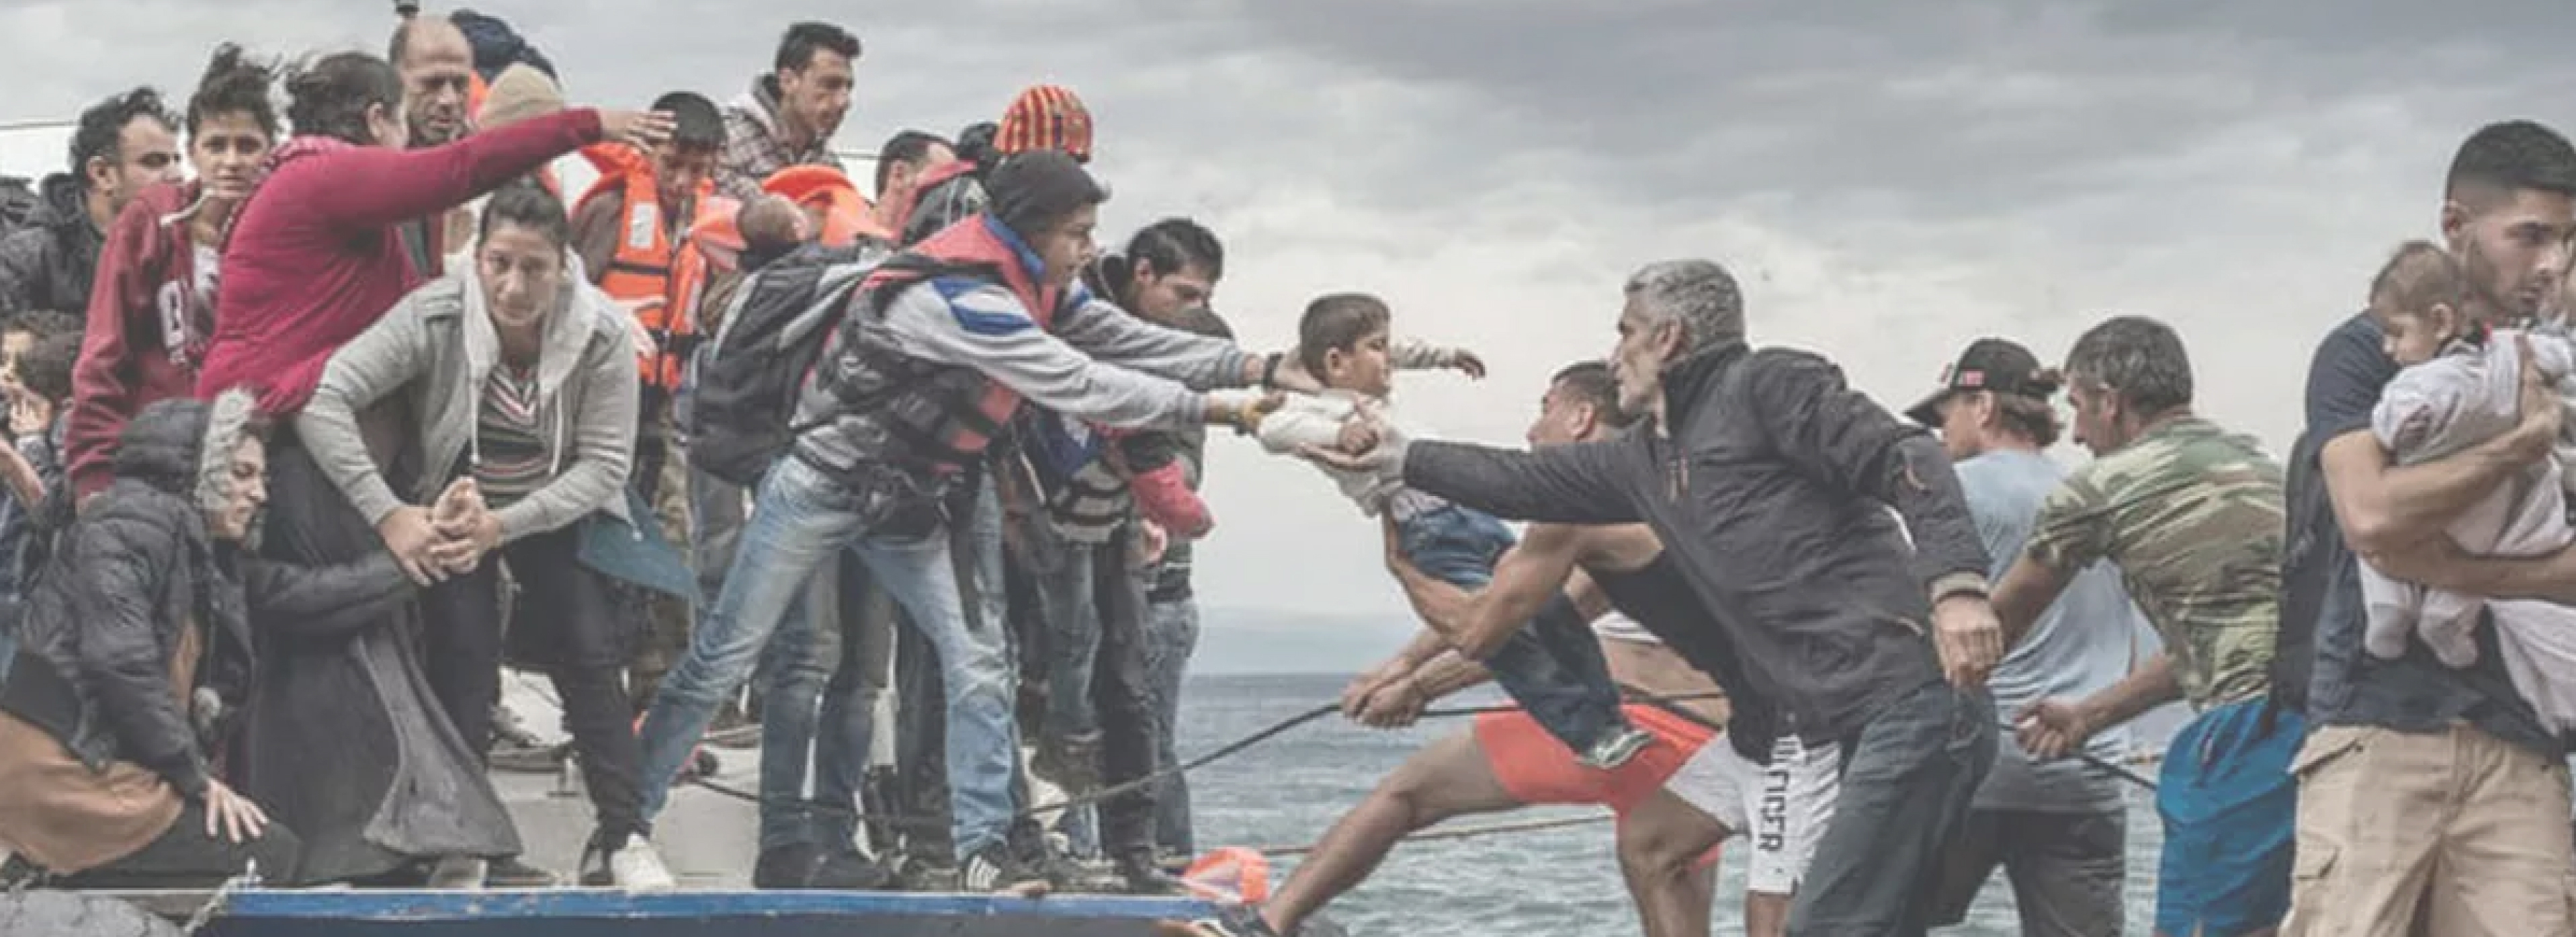 Refugees boat